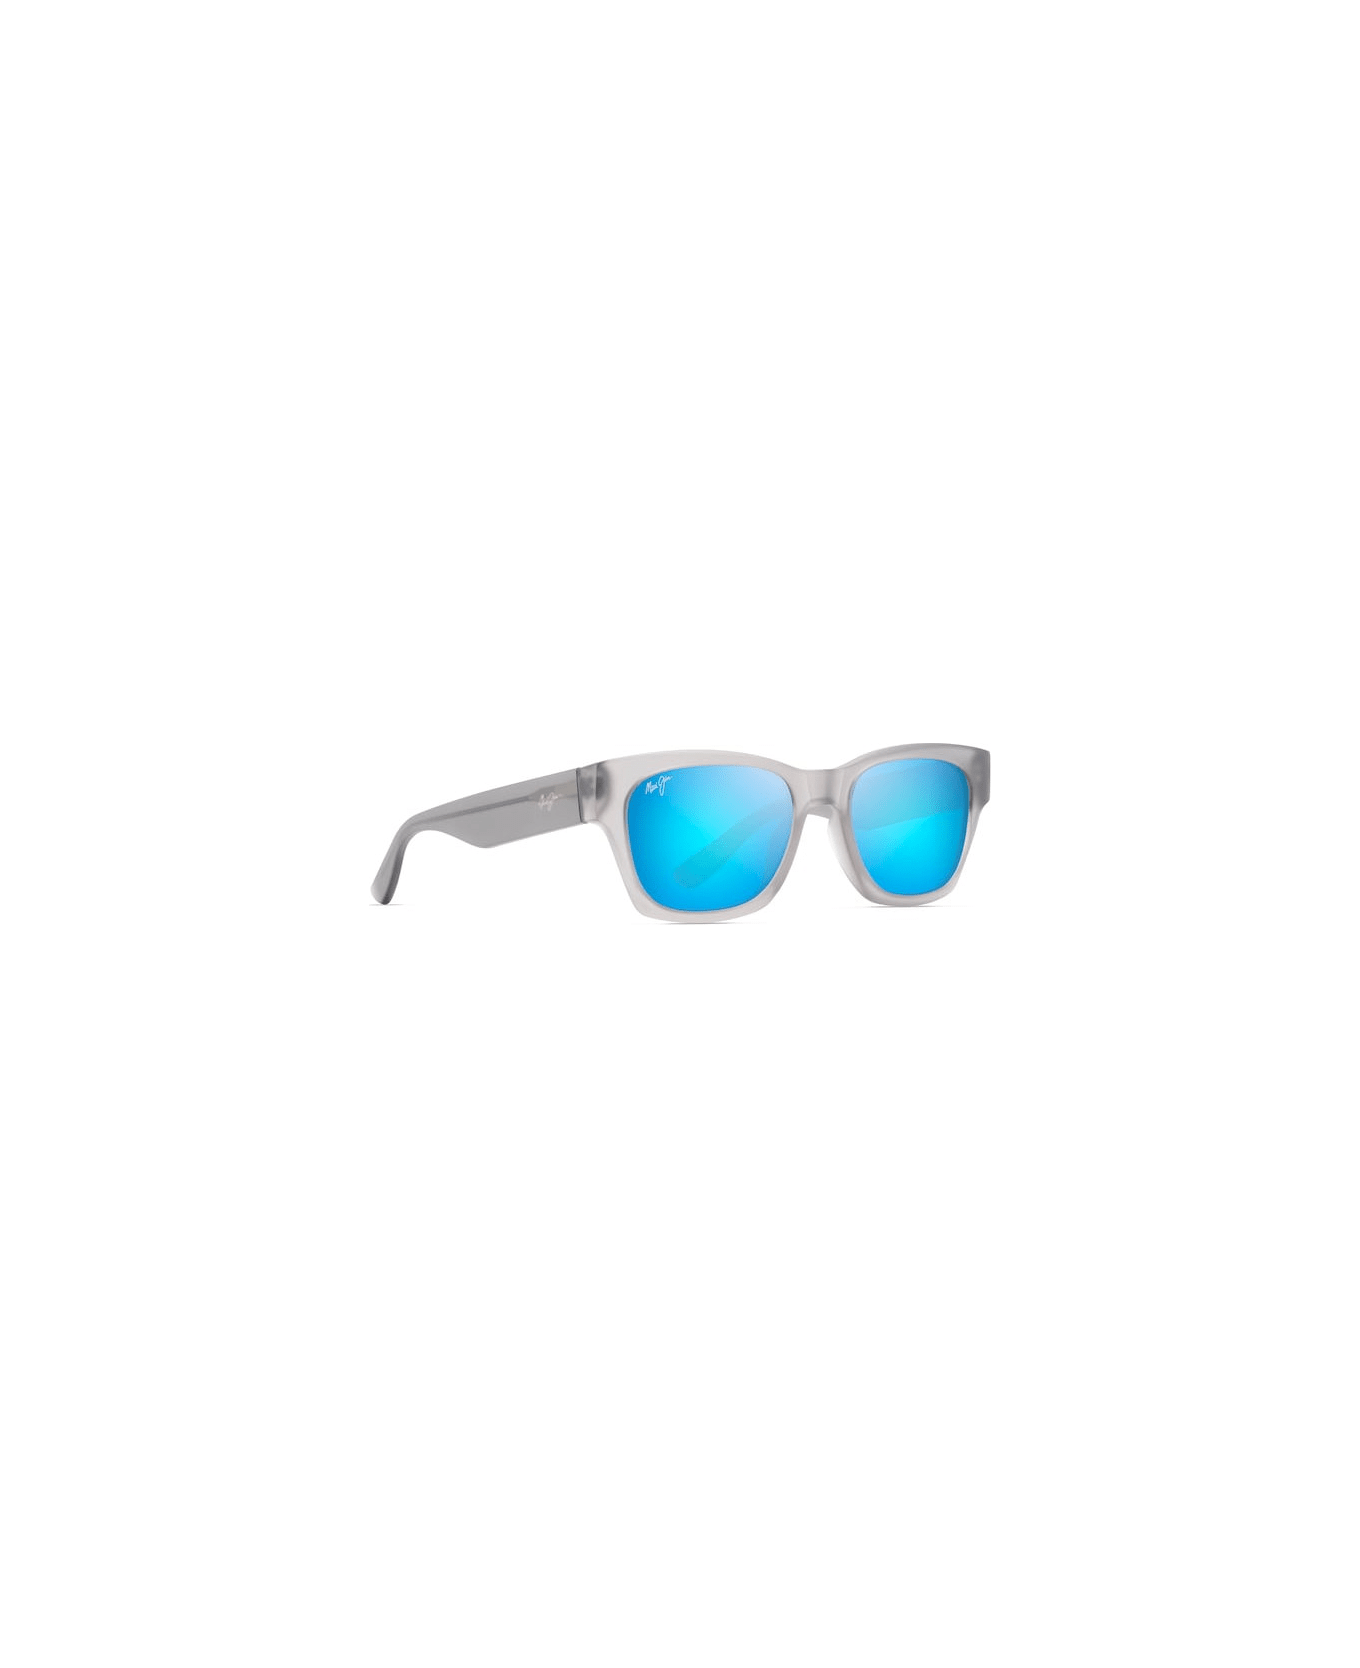 Maui Jim Valley Isle STG Sunglasses